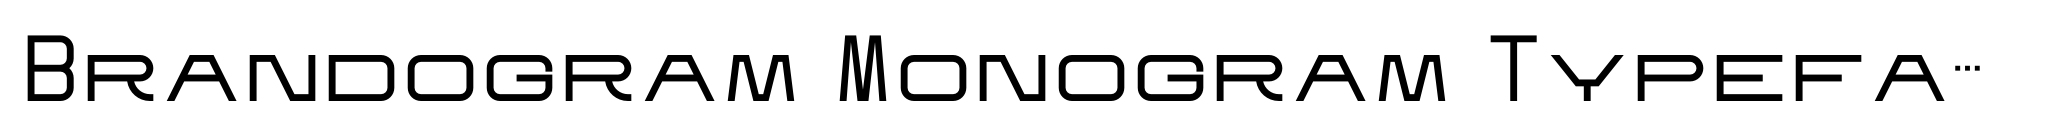 Brandogram Monogram Typeface Medium image